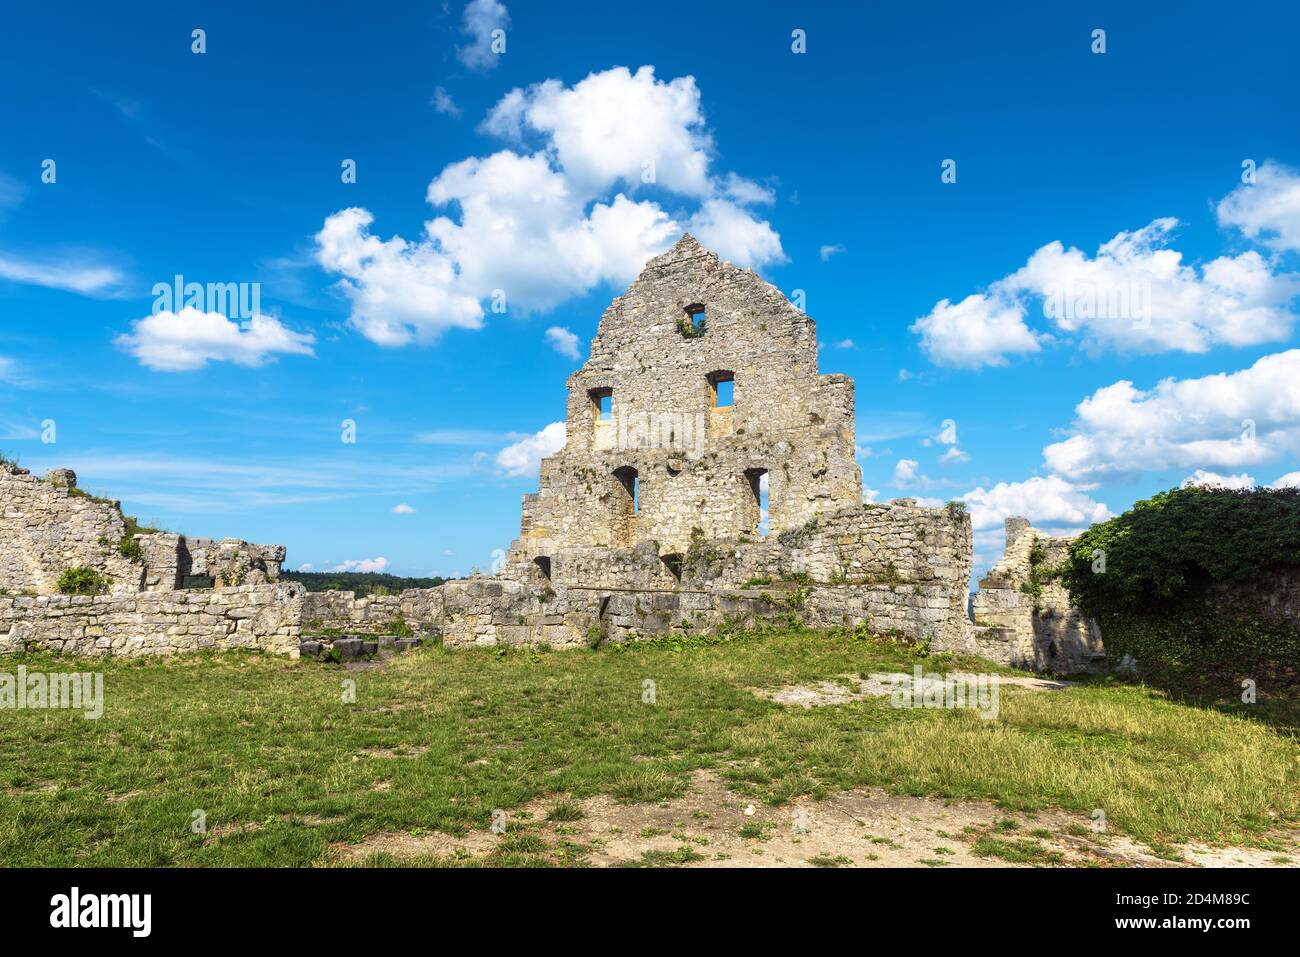 Castello di Hohenurach nel centro storico di Bad Urach, Germania. Le rovine di questo castello medievale sono il punto di riferimento di Baden-Wurttemberg. Paesaggio con tedesco abbandonato c Foto Stock